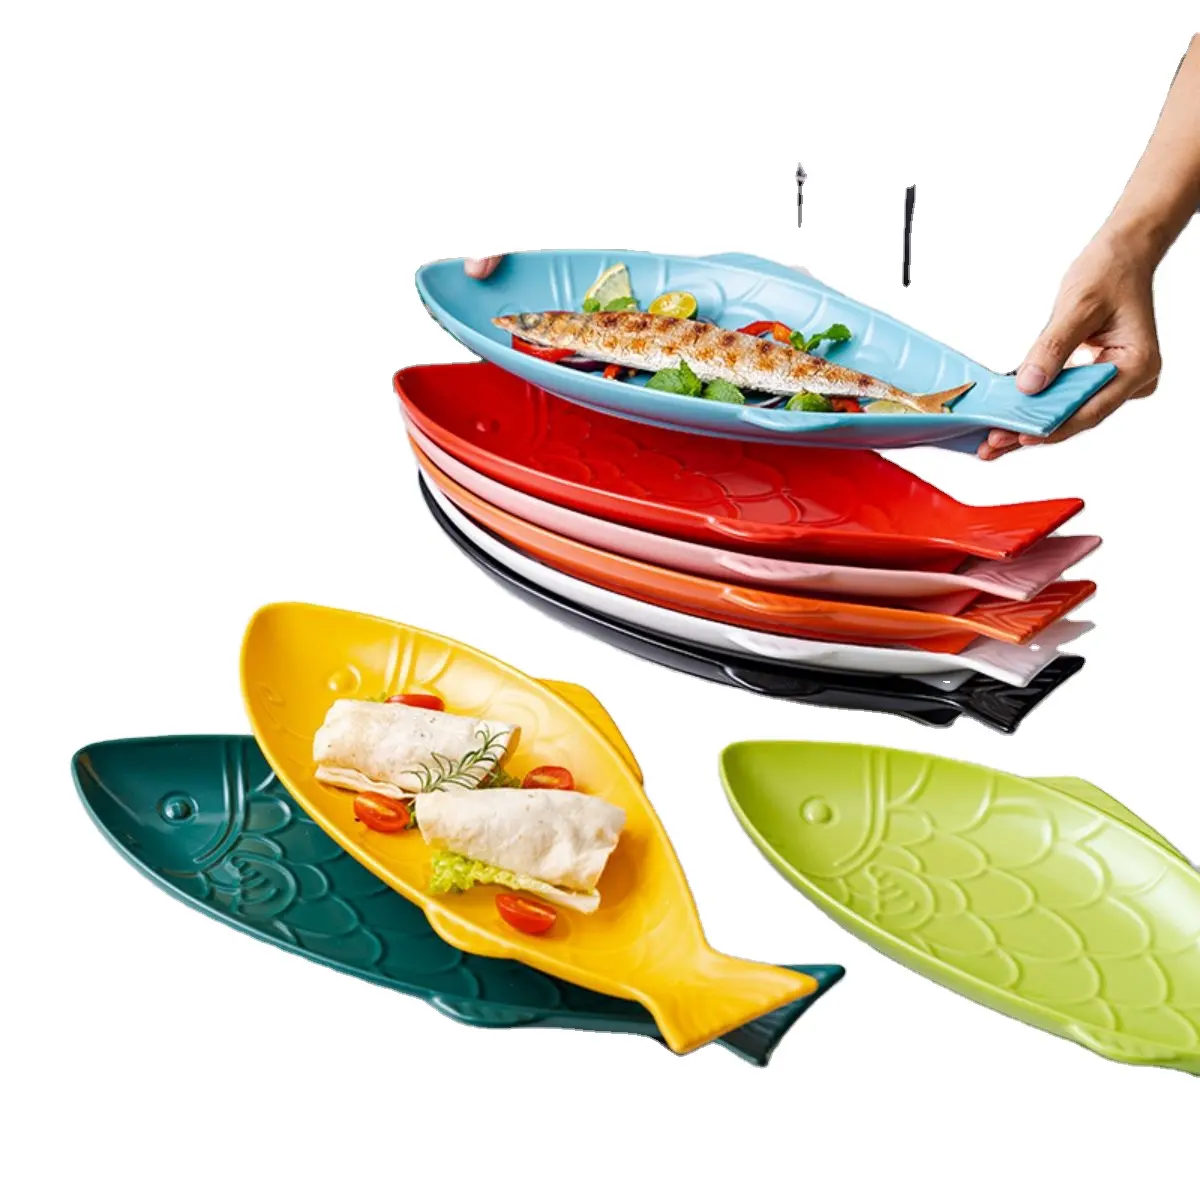 Plato de cerámica con diseño de pescado creativo de estilo nórdico, Platos y platos multicolores de 16 pulgadas, juego de platos de melamina, vajilla